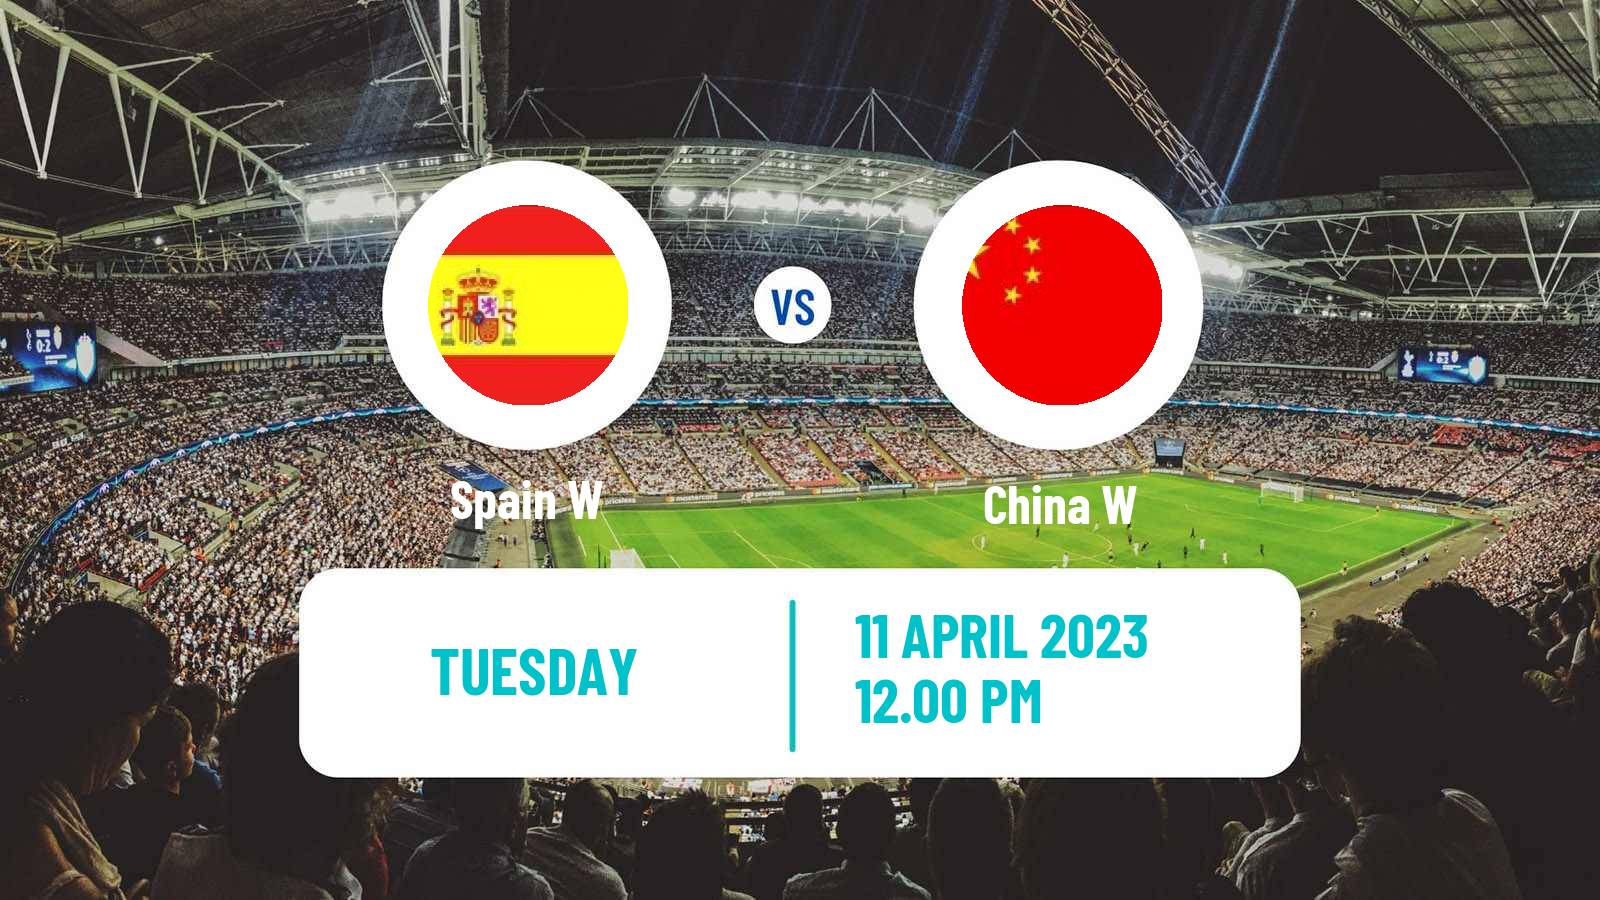 Soccer Friendly International Women Spain W - China W